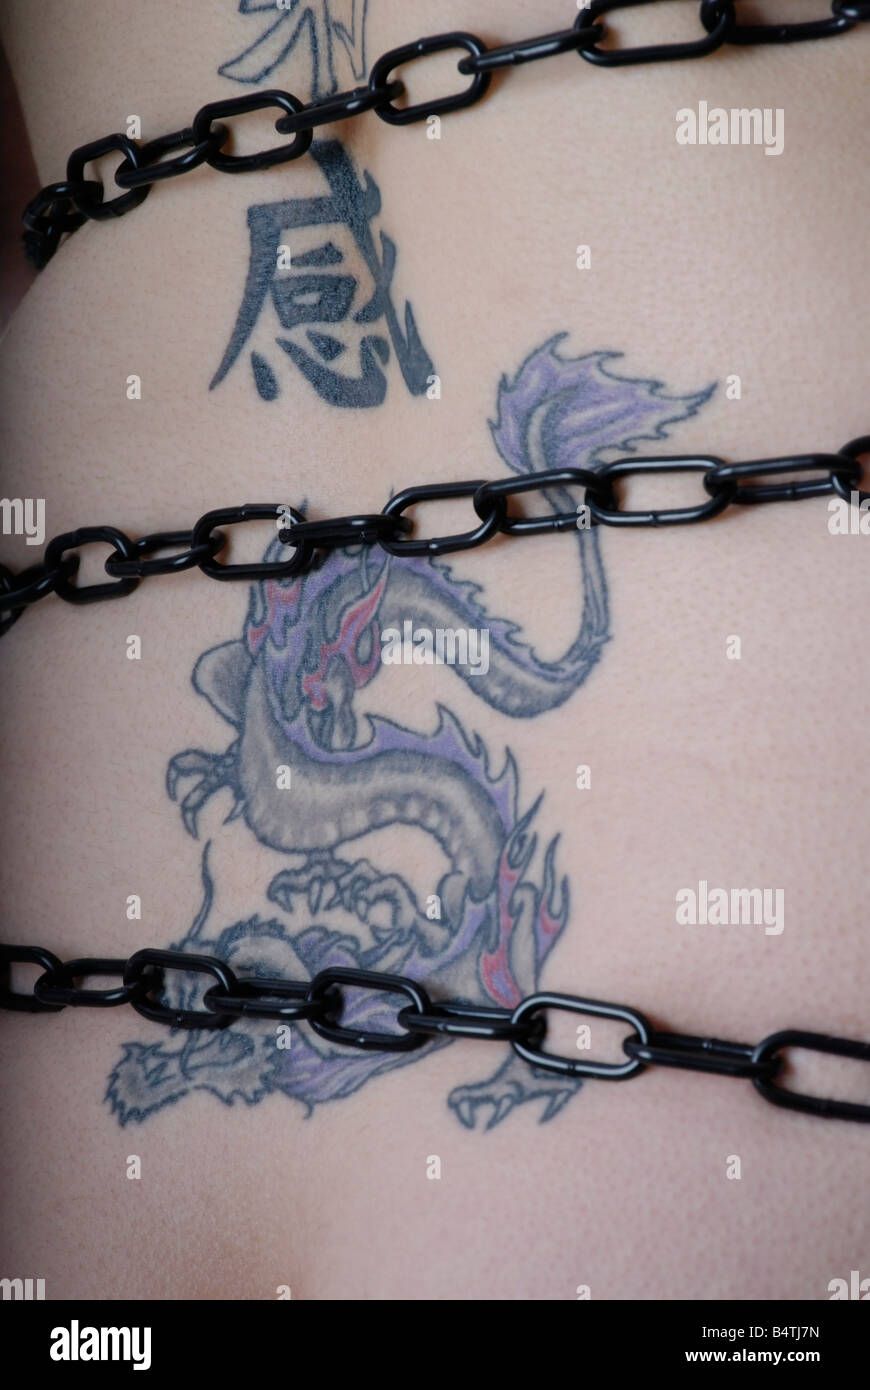 45 Eye-Grabbing Chain Tattoo Ideas That You May Miss! - Tattoo Twist